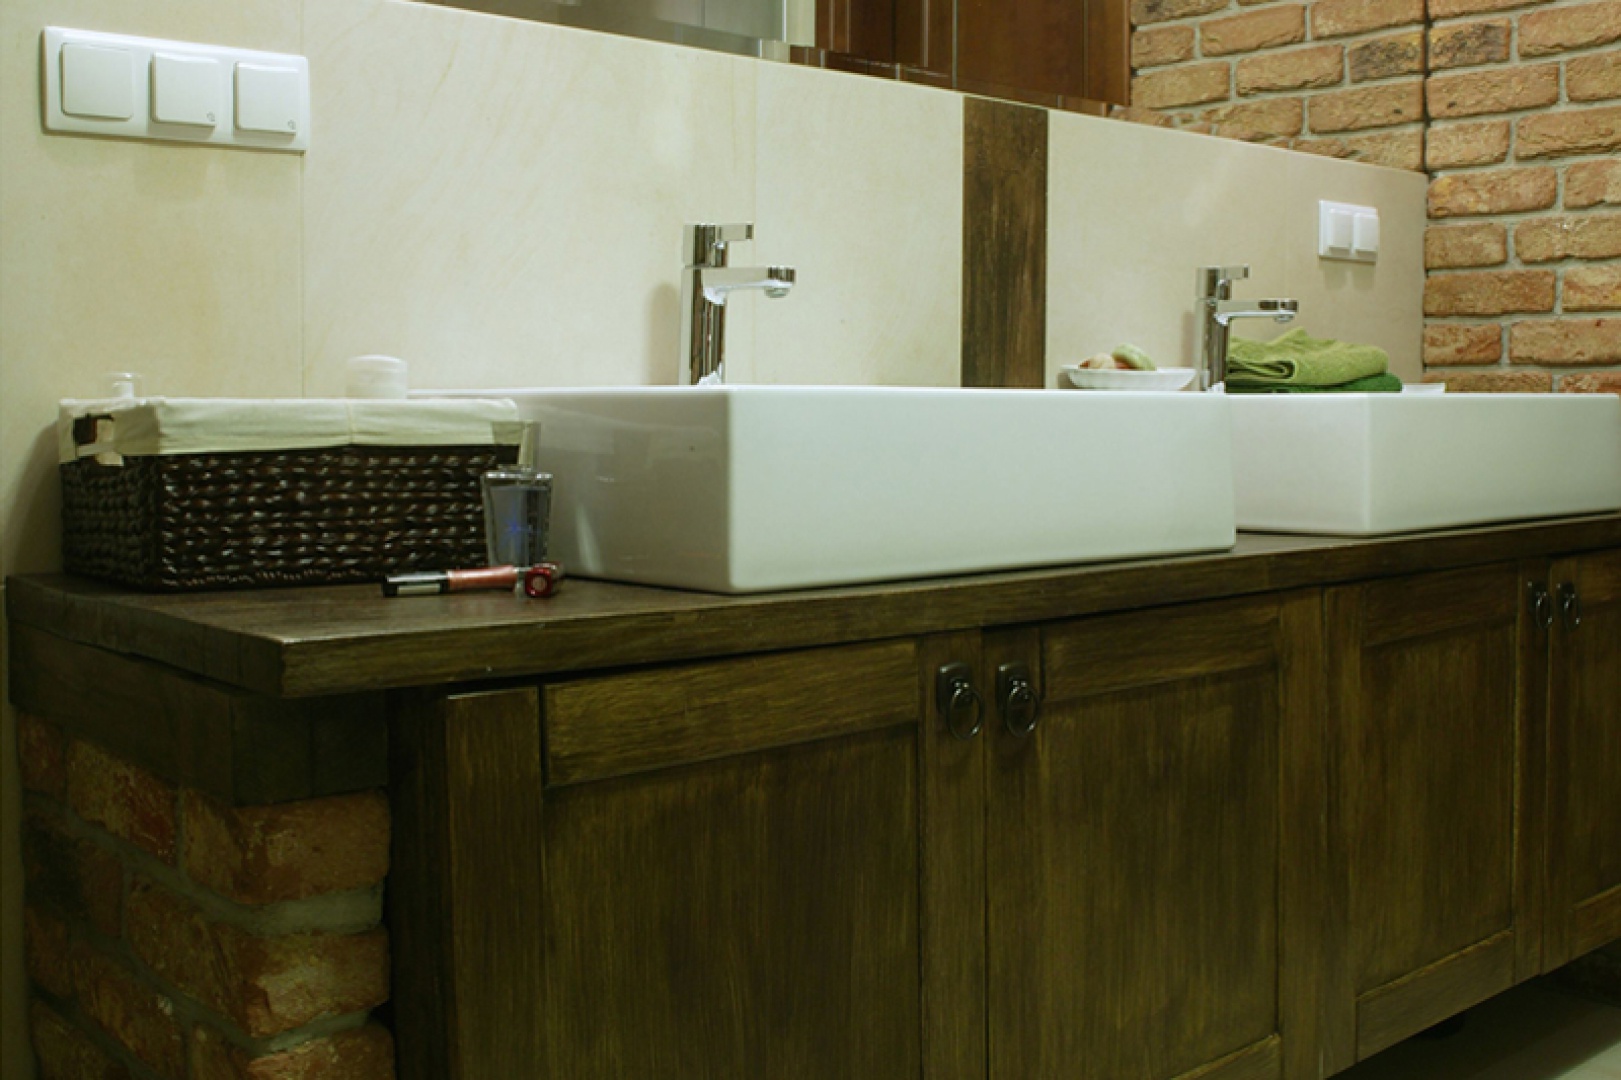 O tym, że to wnętrze dla pary świadczą dwie umywalki „Quattro” (prod. Koło) o szlachetnych kształtach. Fot. Monika Filipiuk.